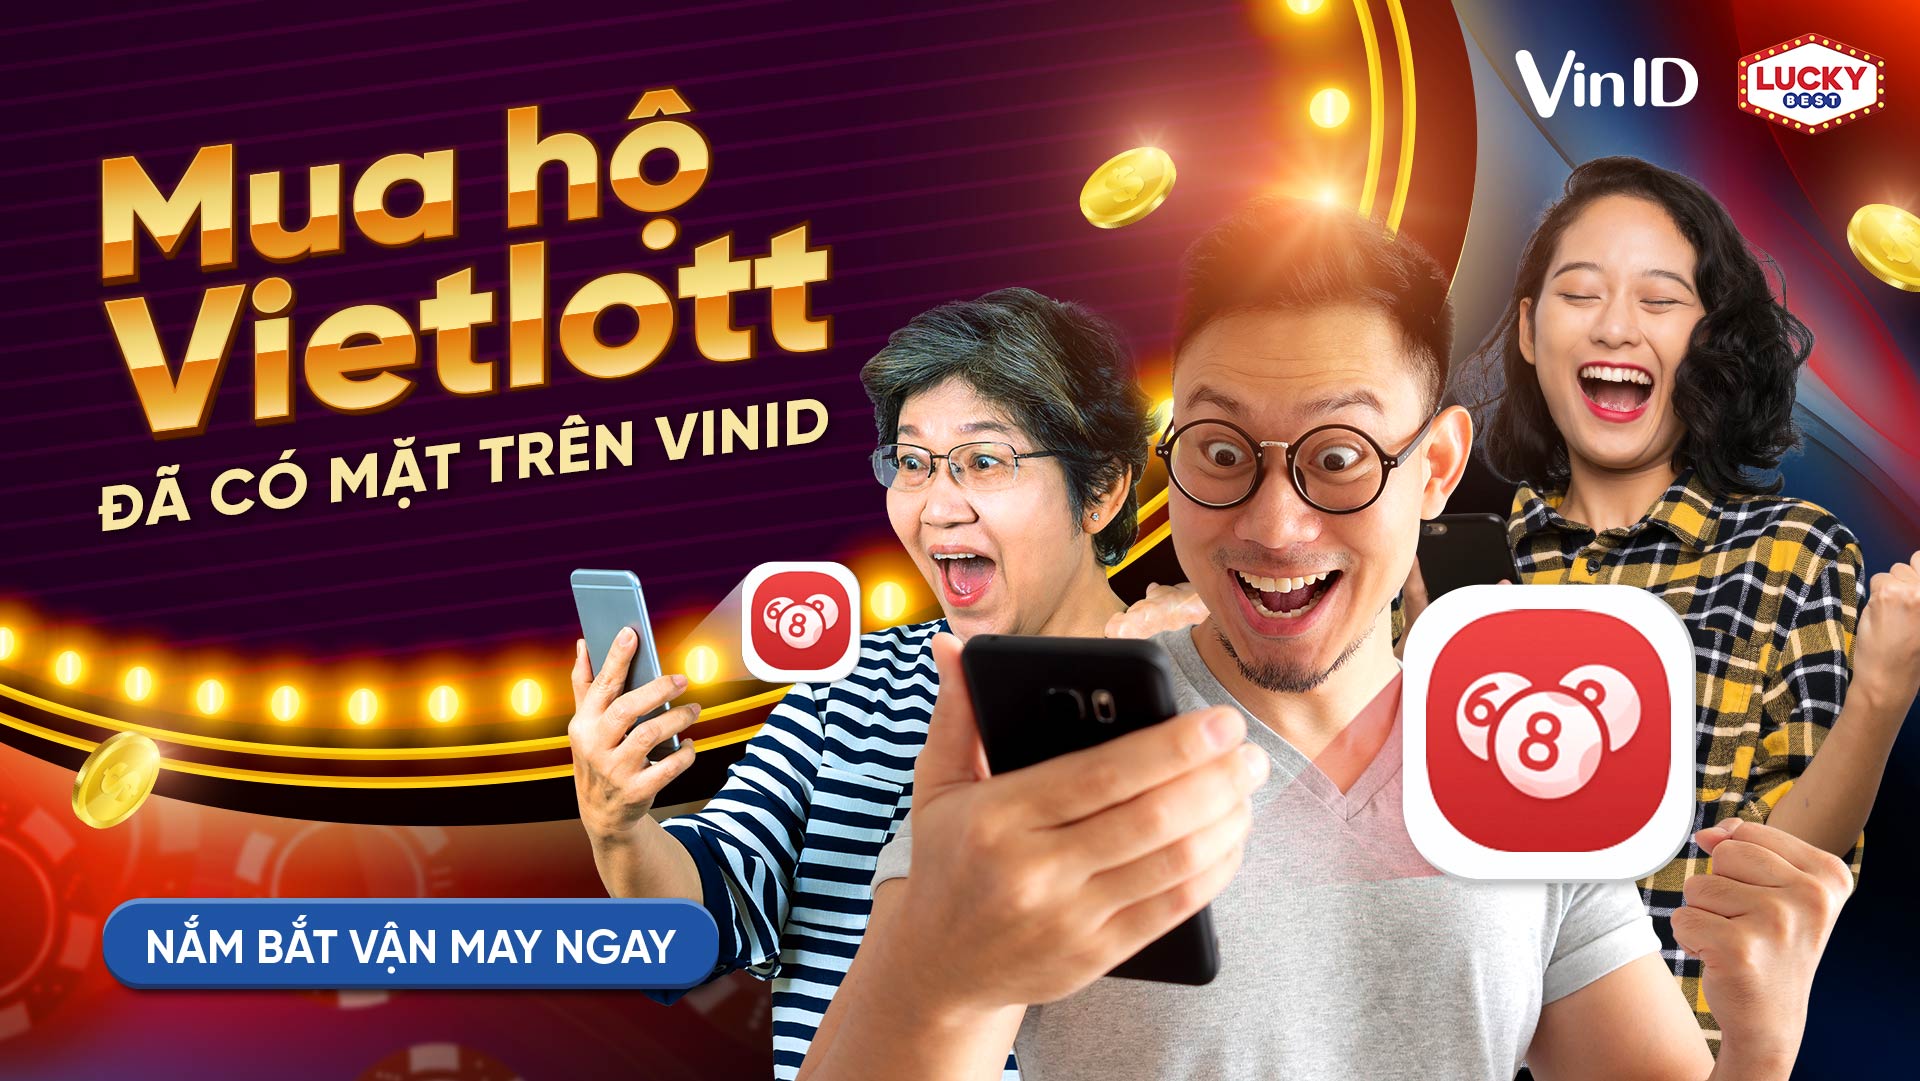 Dịch vụ mua vé số Vietlott Online qua LuckyBest nay đã có mặt trên VinID |  VinID